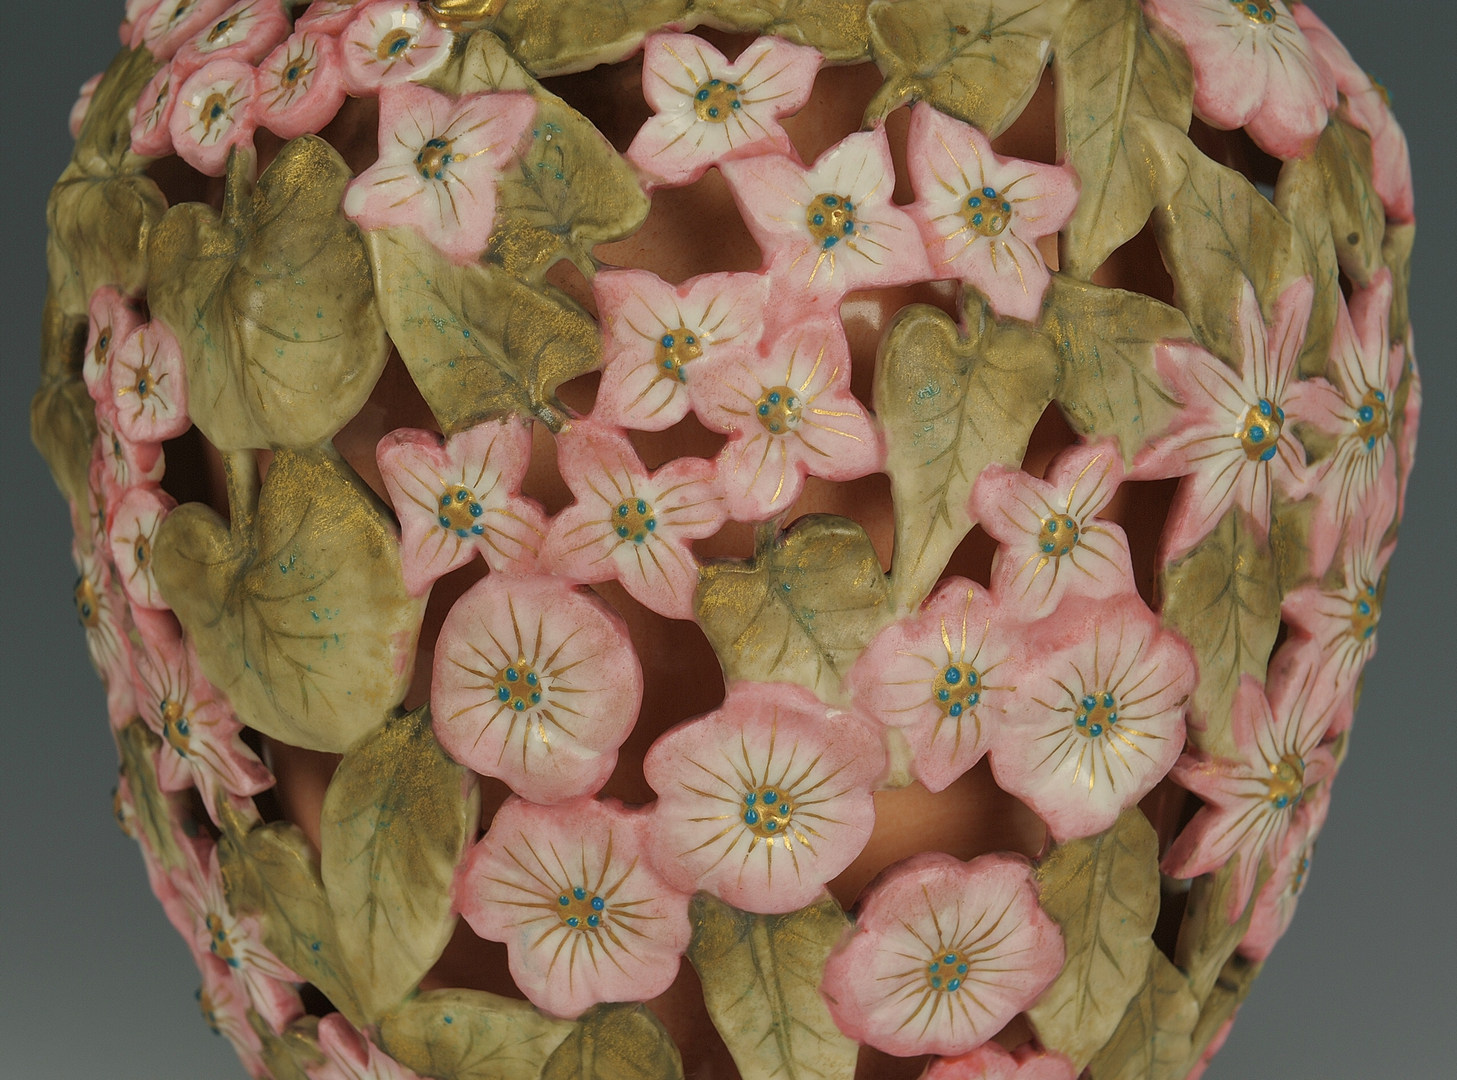 Lot 447: Pr. Rudolstadt Porcelain Vases, pierced floral des